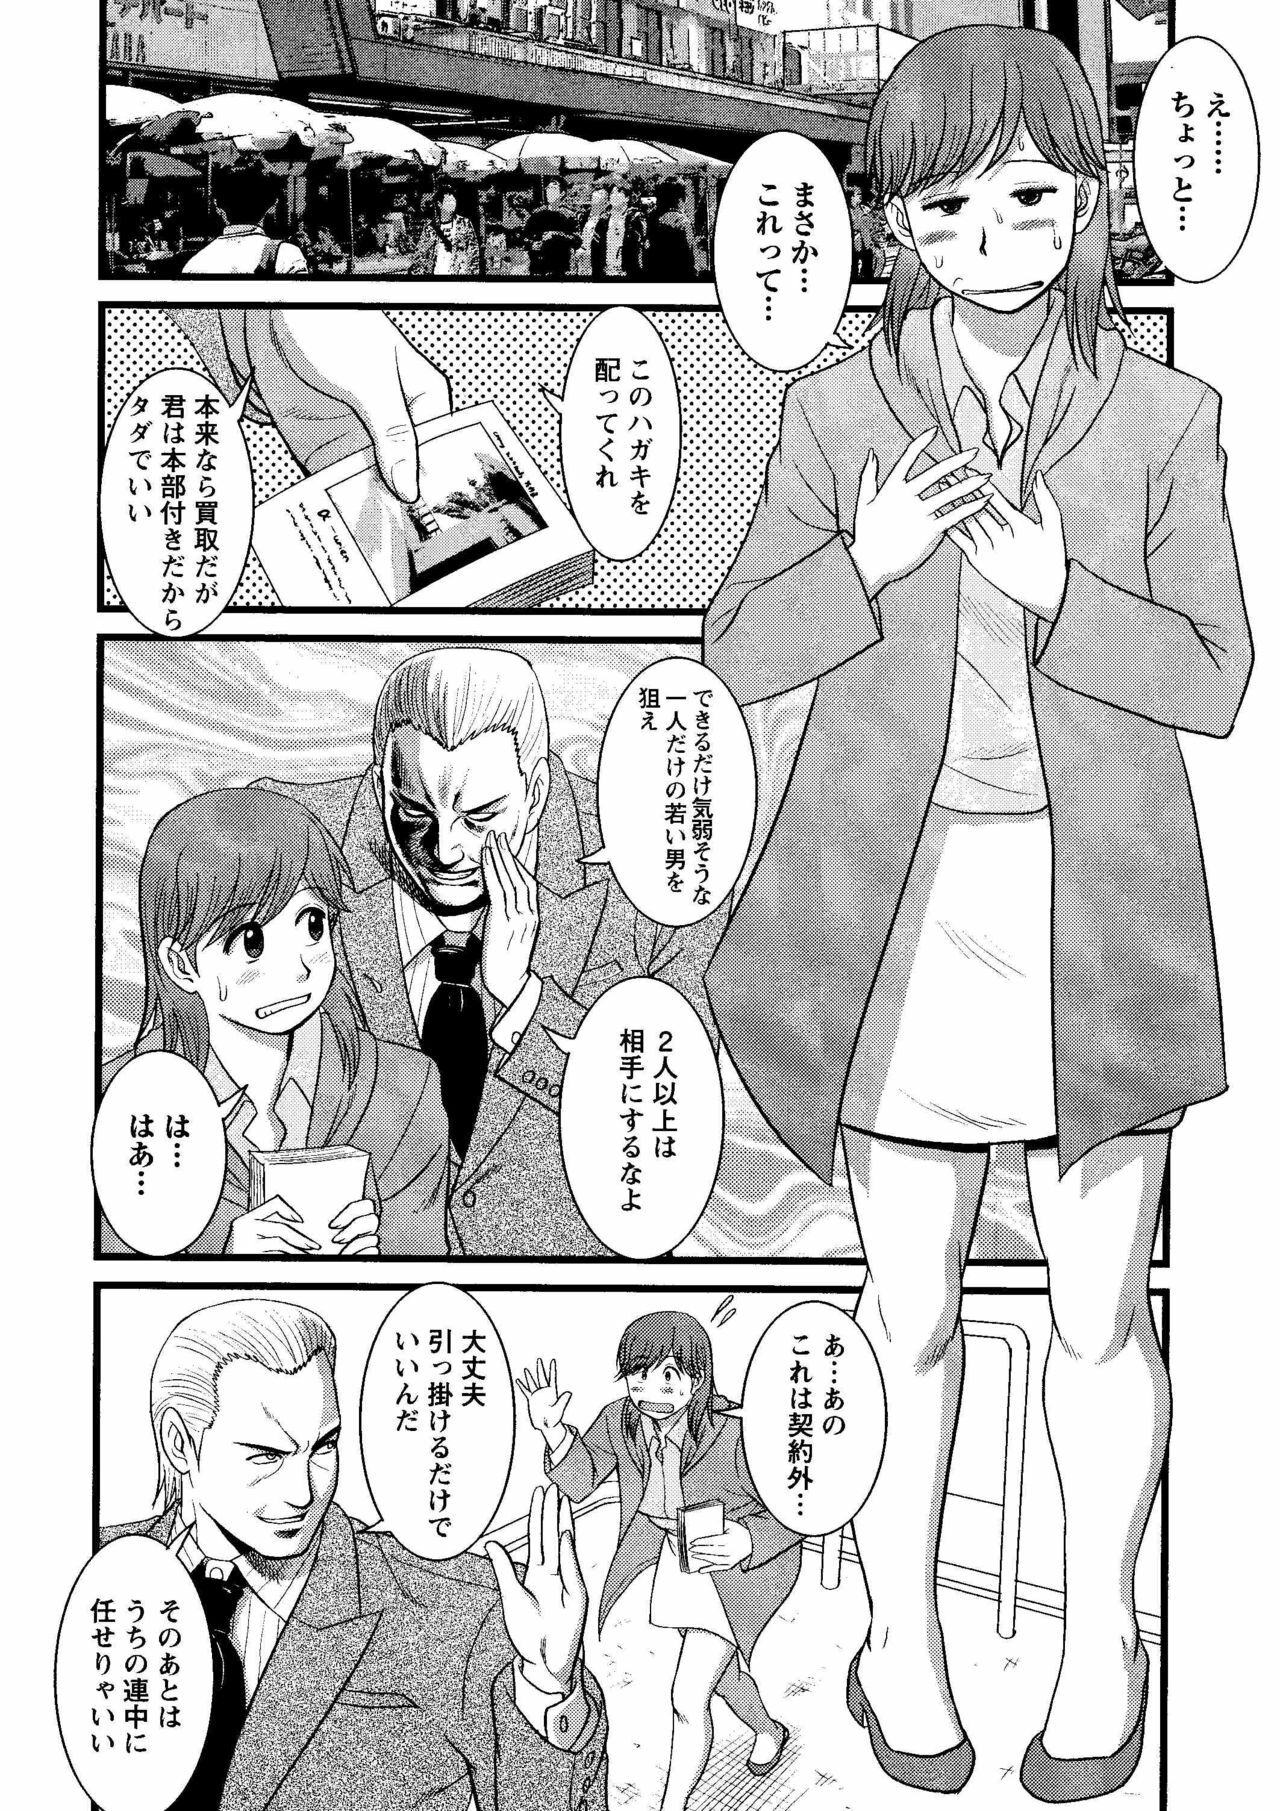 Haken no Muuko-san 8 [Saigado] page 11 full